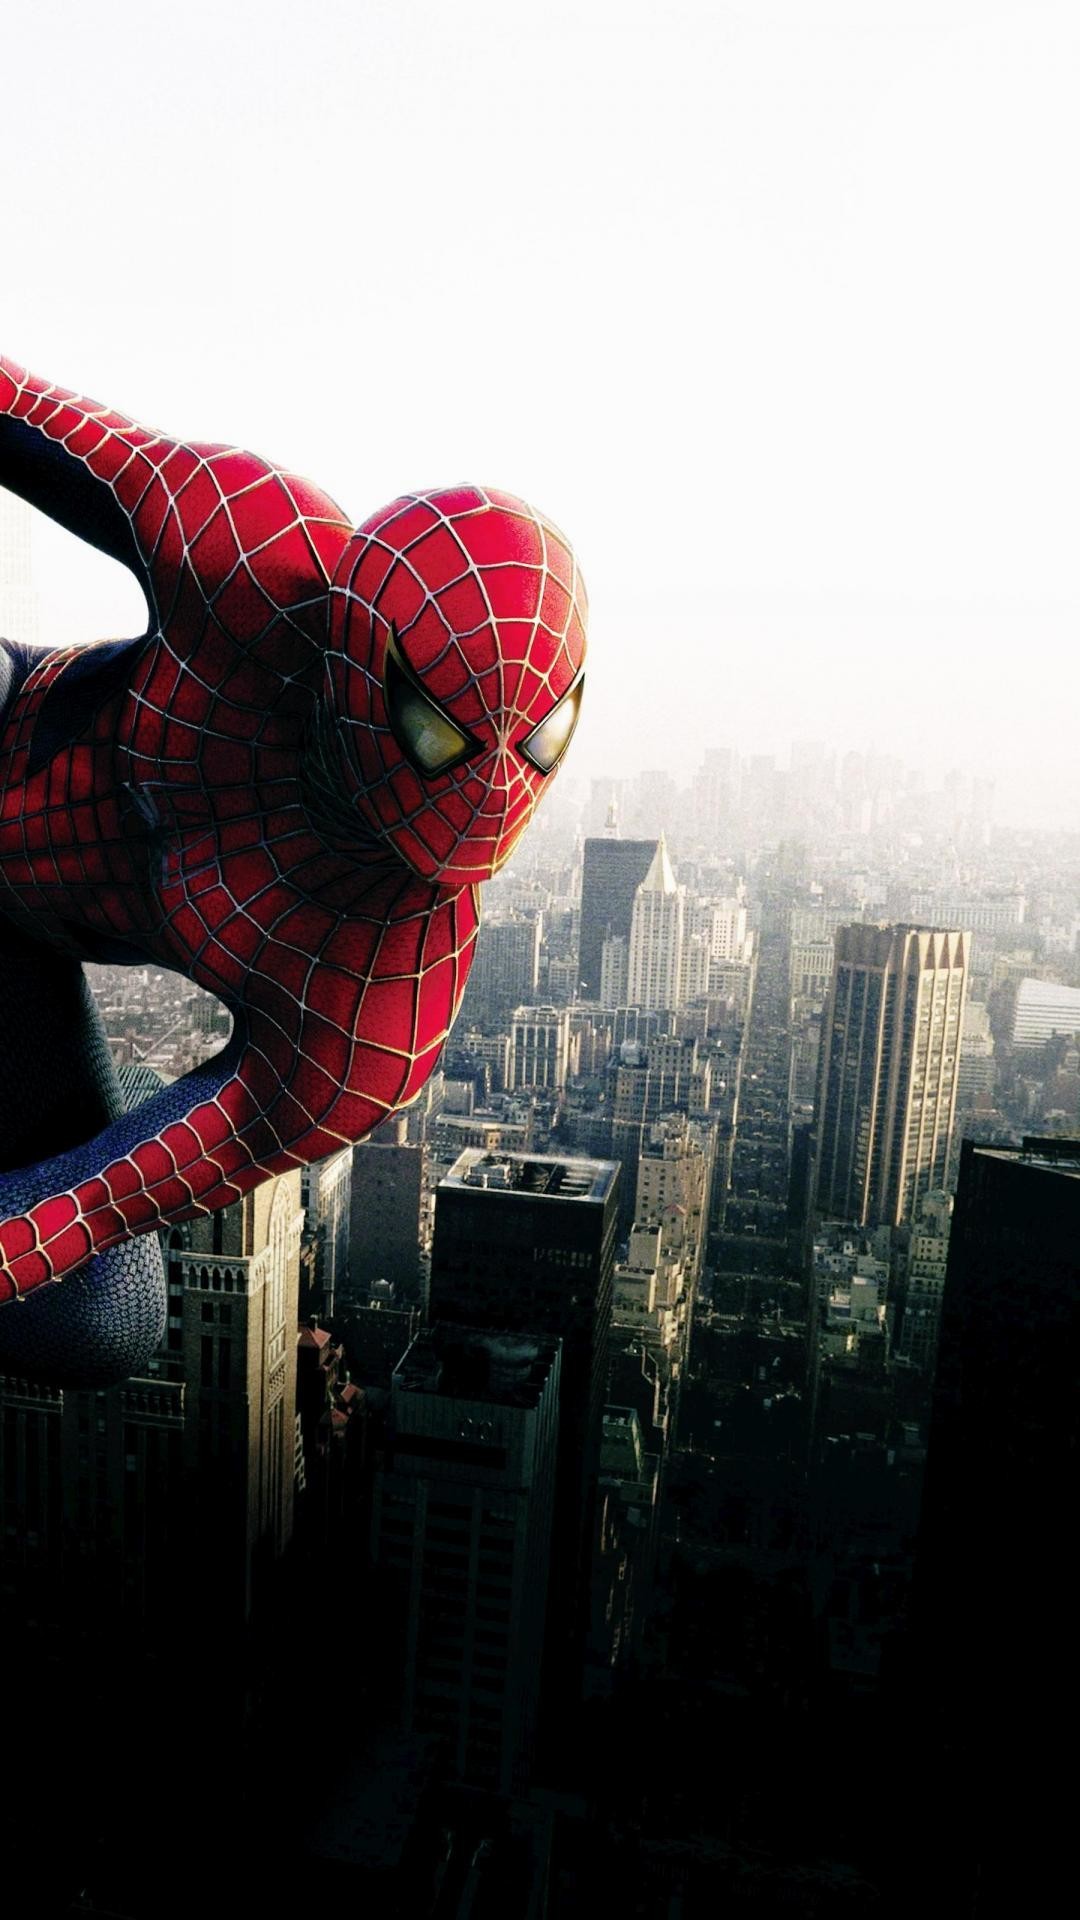 spiderman fond d'écran iphone hd,homme araignée,super héros,personnage fictif